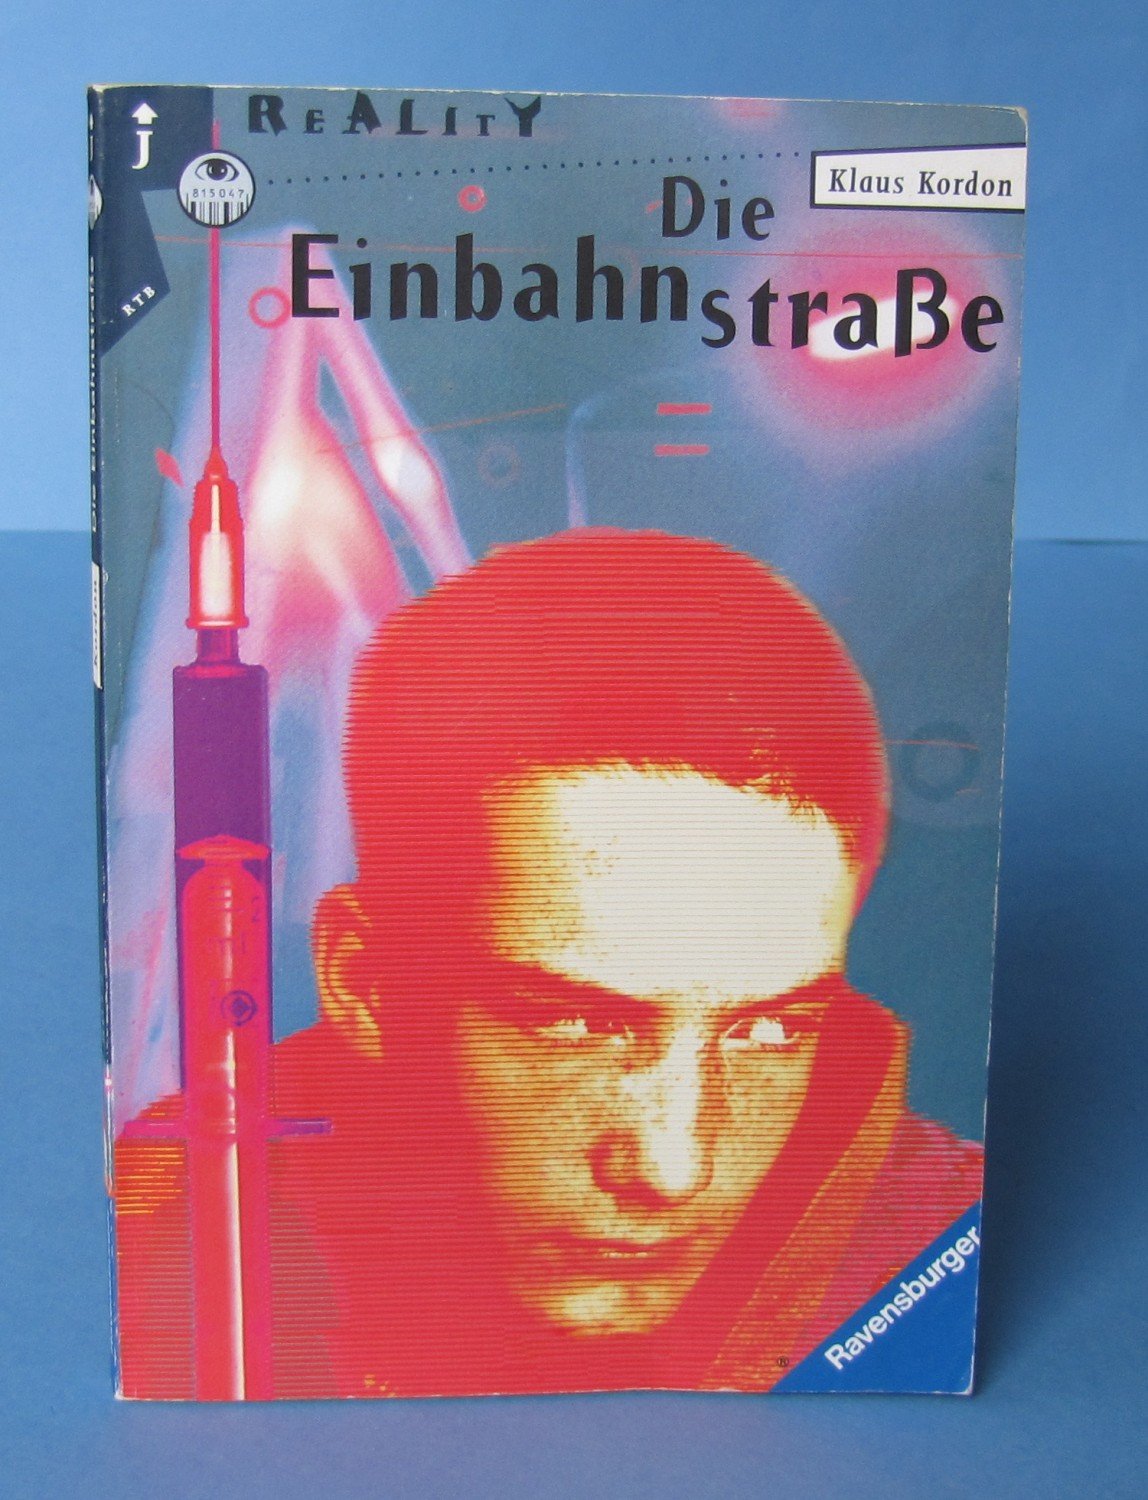 Die Einbahnstrasse Klaus Kordon Buch Gebraucht Kaufen A01j2v7b01zzw